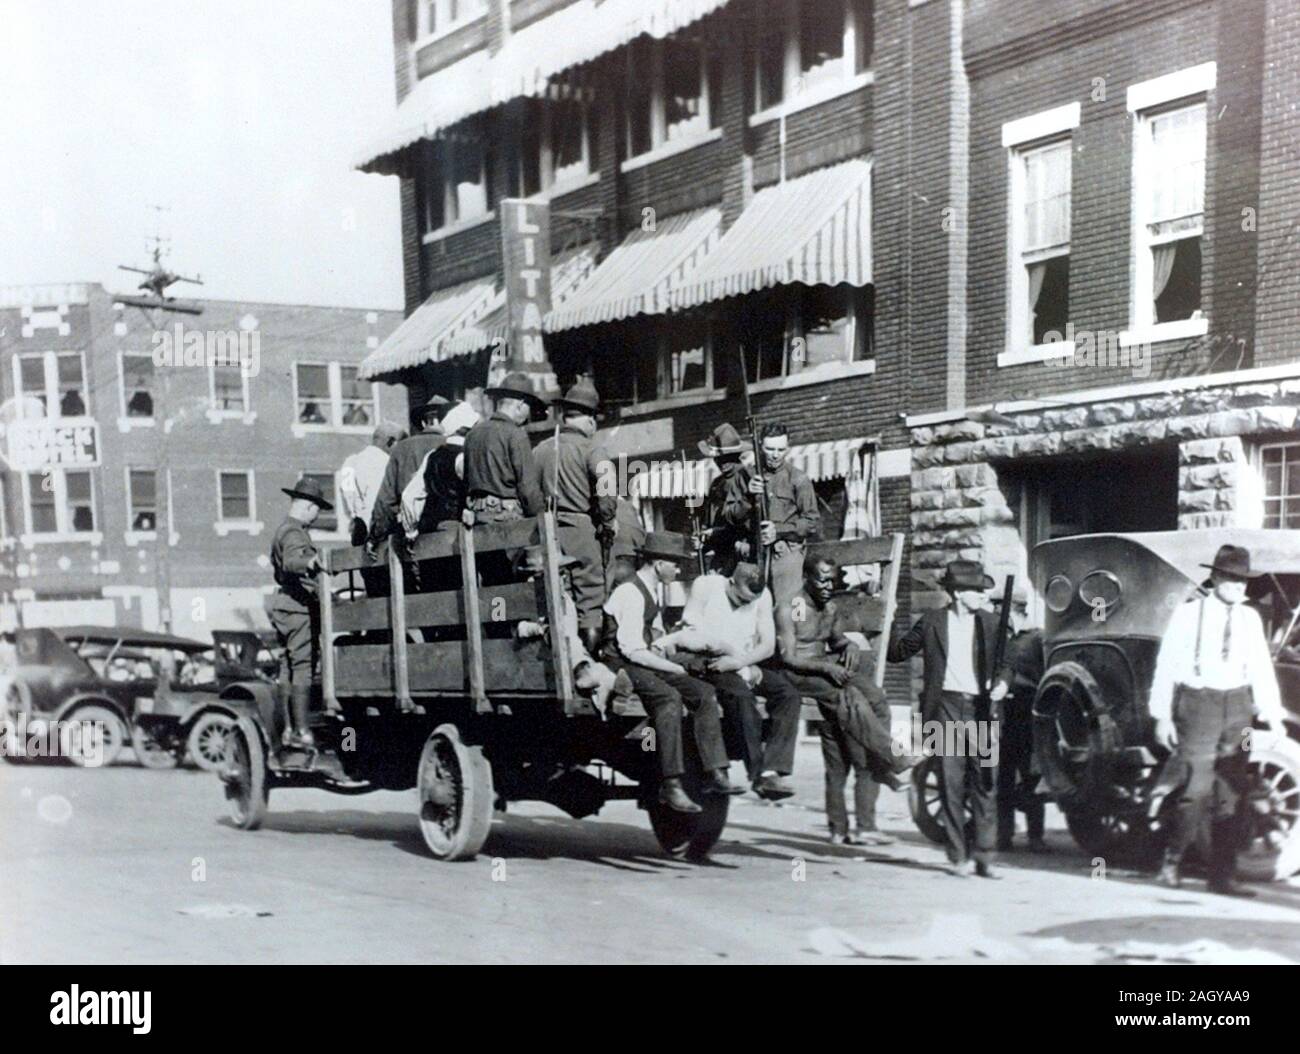 Garde nationale et blessés au cours d'émeutes raciales, Tulsa 1921 blessés qui sont prises pour l'Brady theatre. Banque D'Images